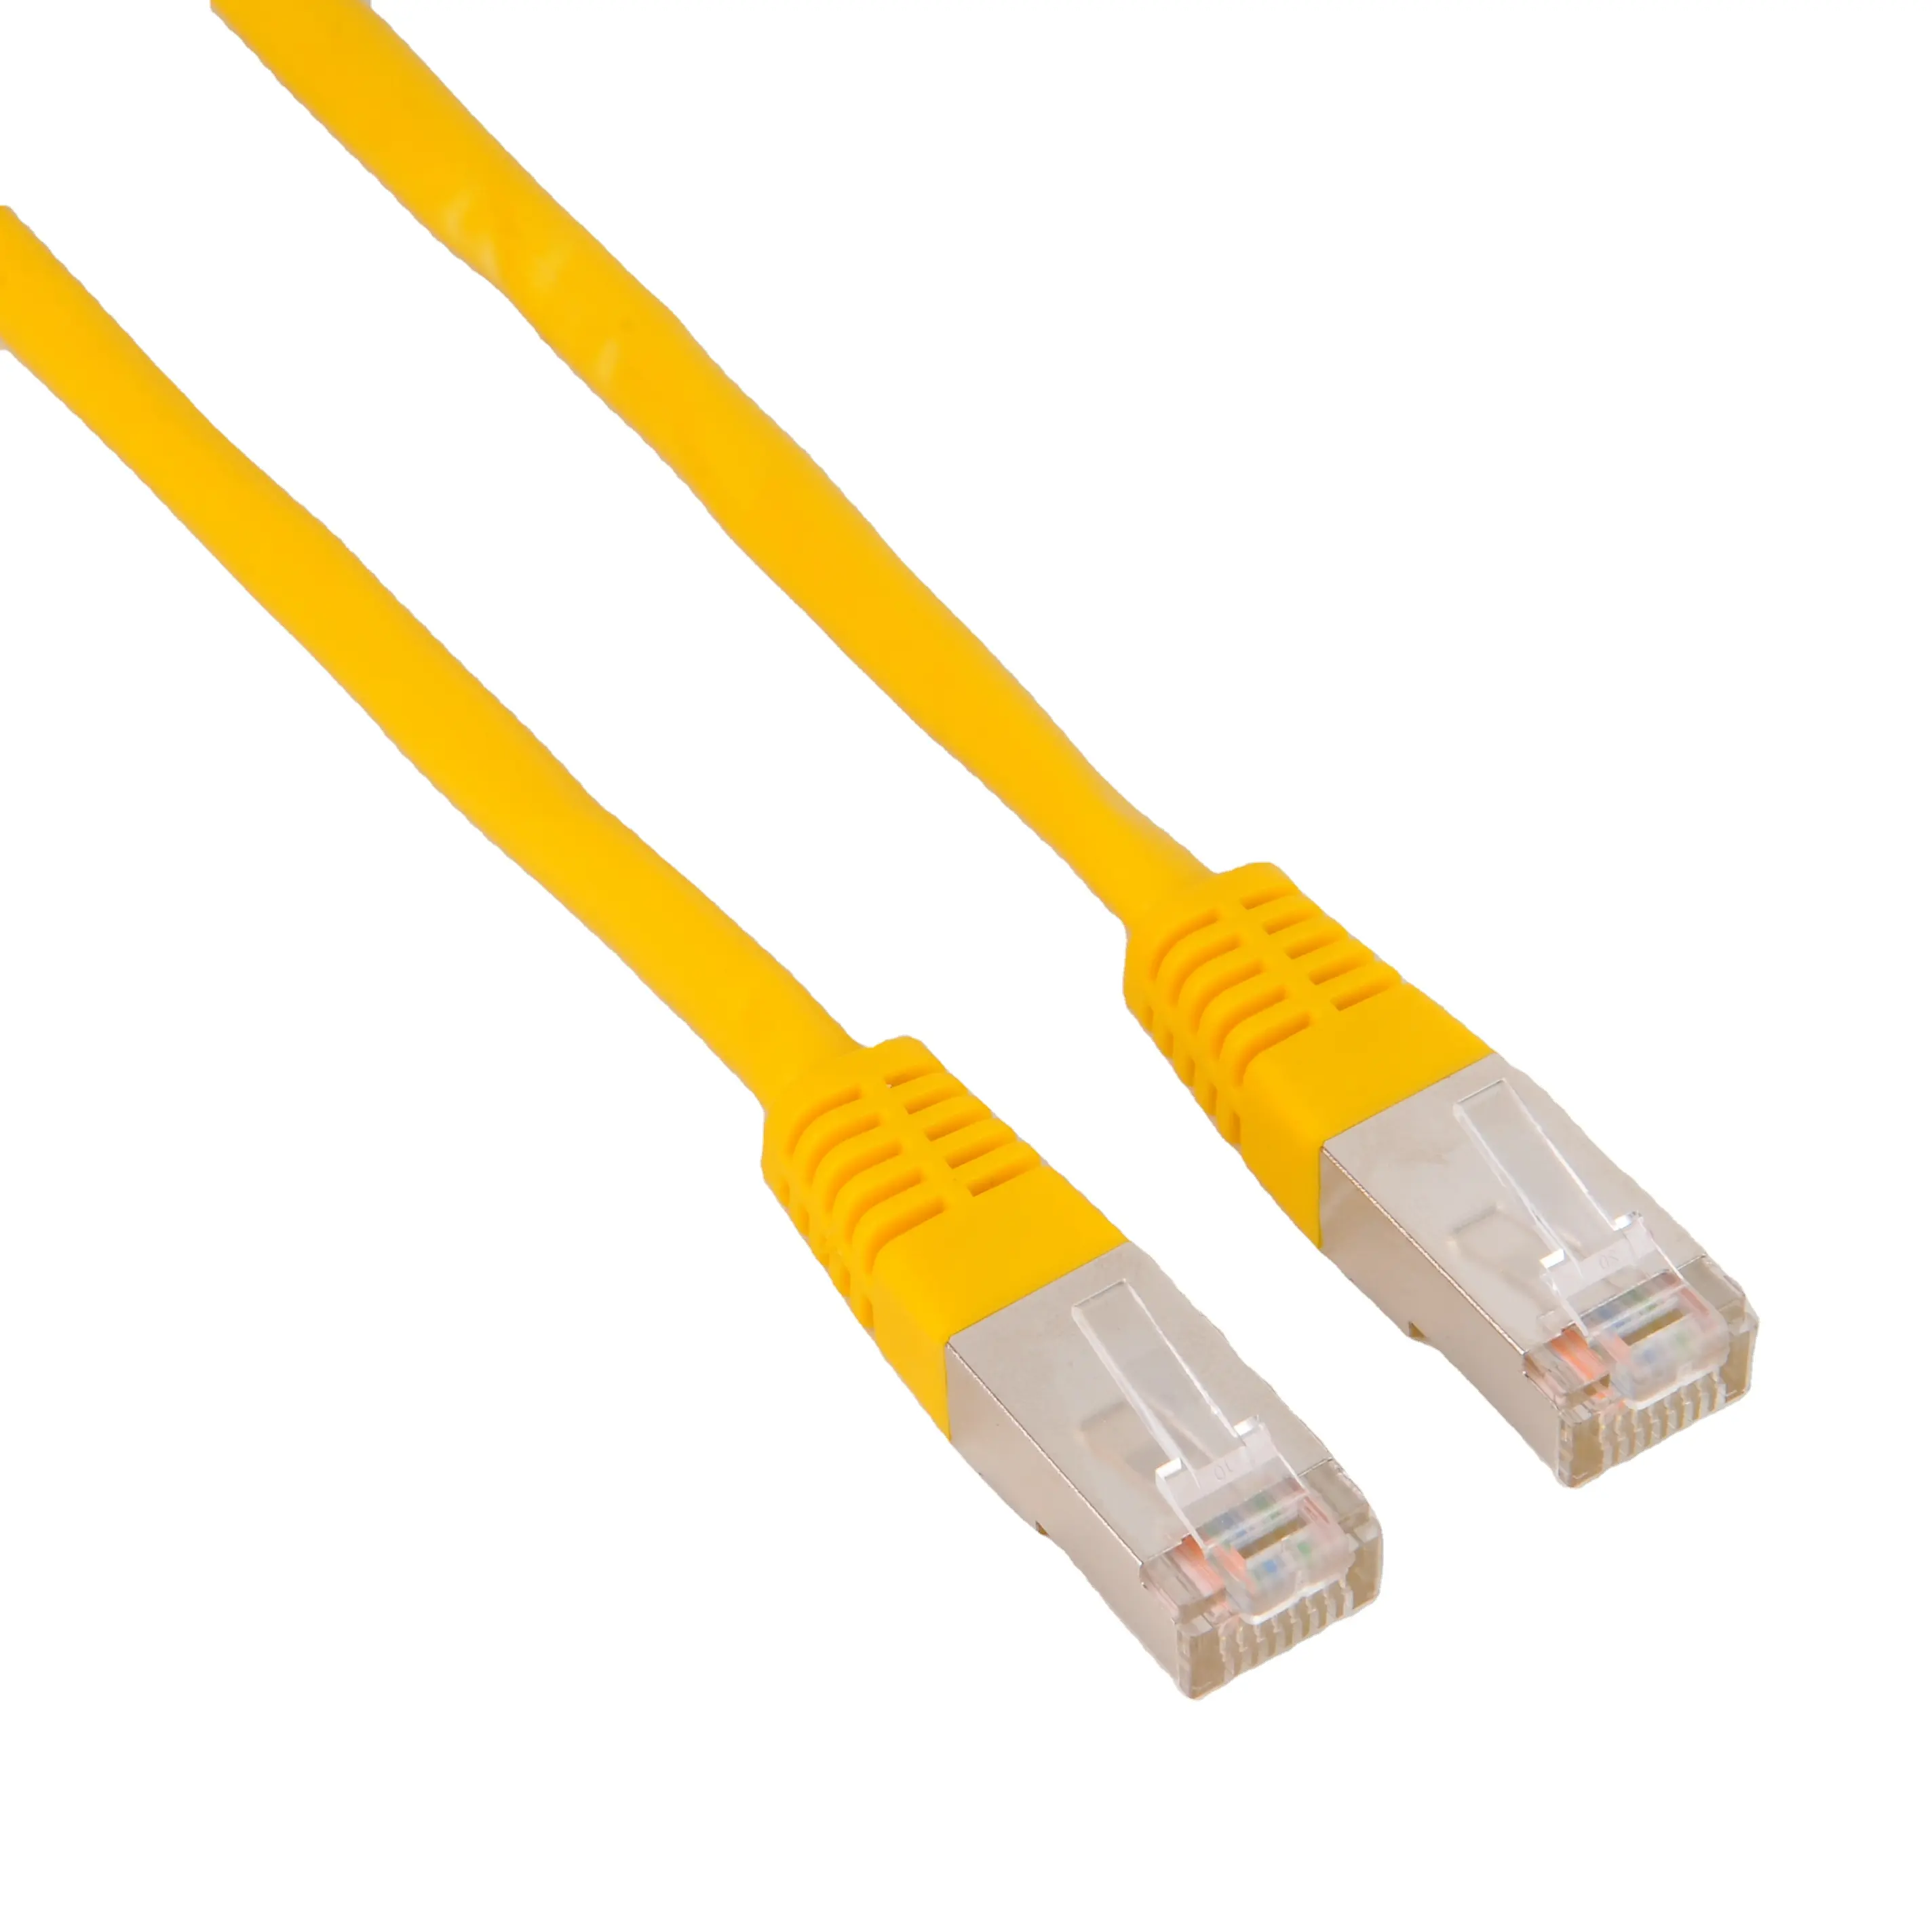 Màu Sắc Tùy Chọn Chất Lượng Cao Mạng UTP Cat5e Cat6 0.25M Dây Cáp Nối 24AWG Cho Máy Tính Ethernet